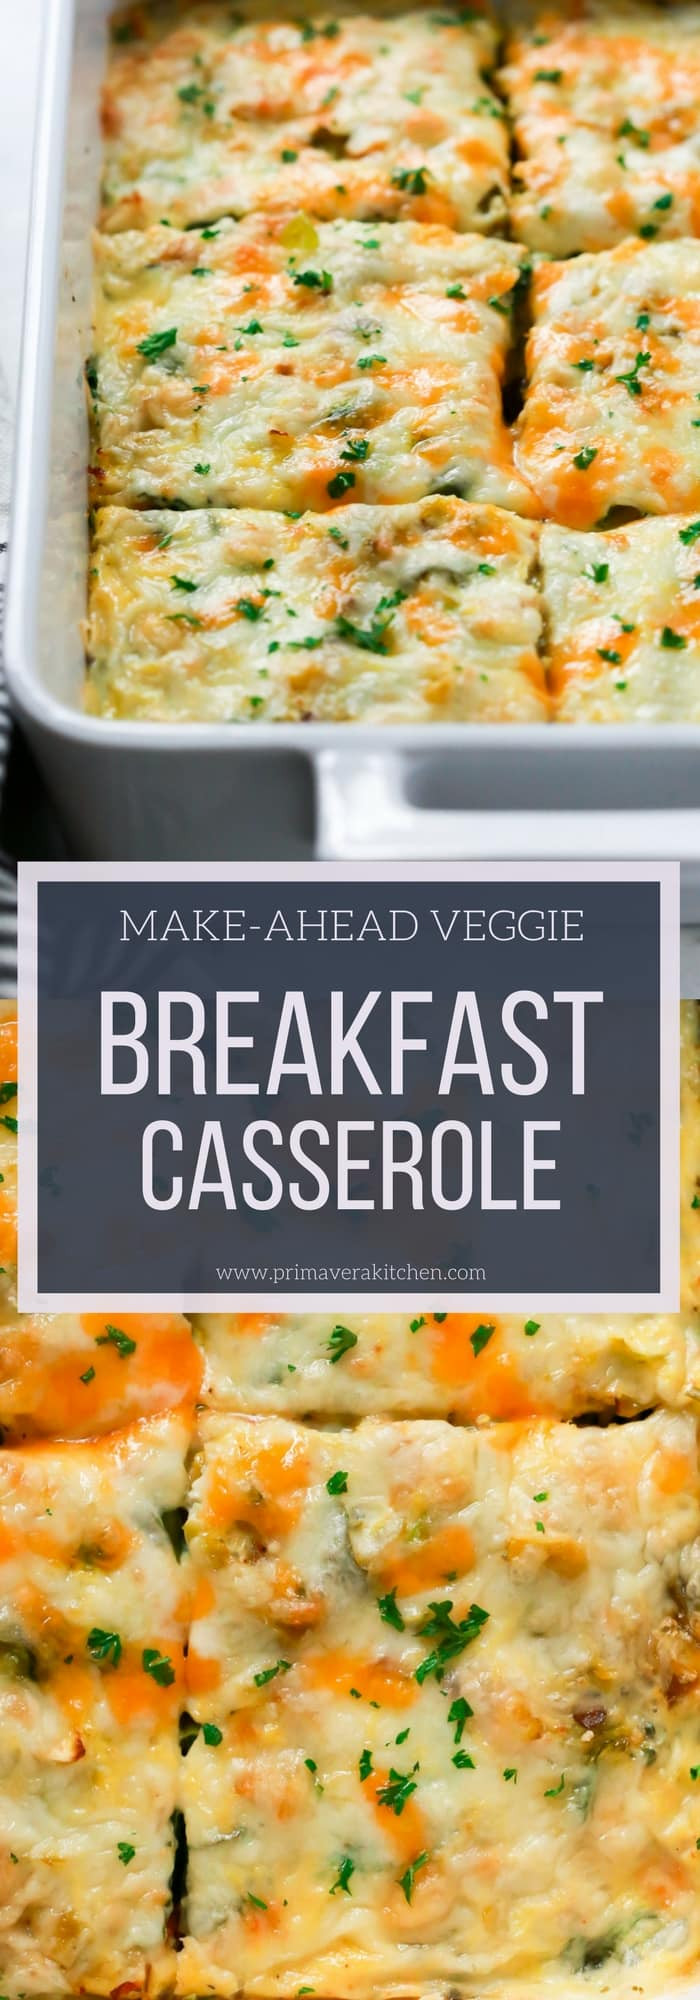 Make Ahead Breakfast Casserole Healthy
 Make Ahead Veggie Breakfast Casserole Primavera Kitchen